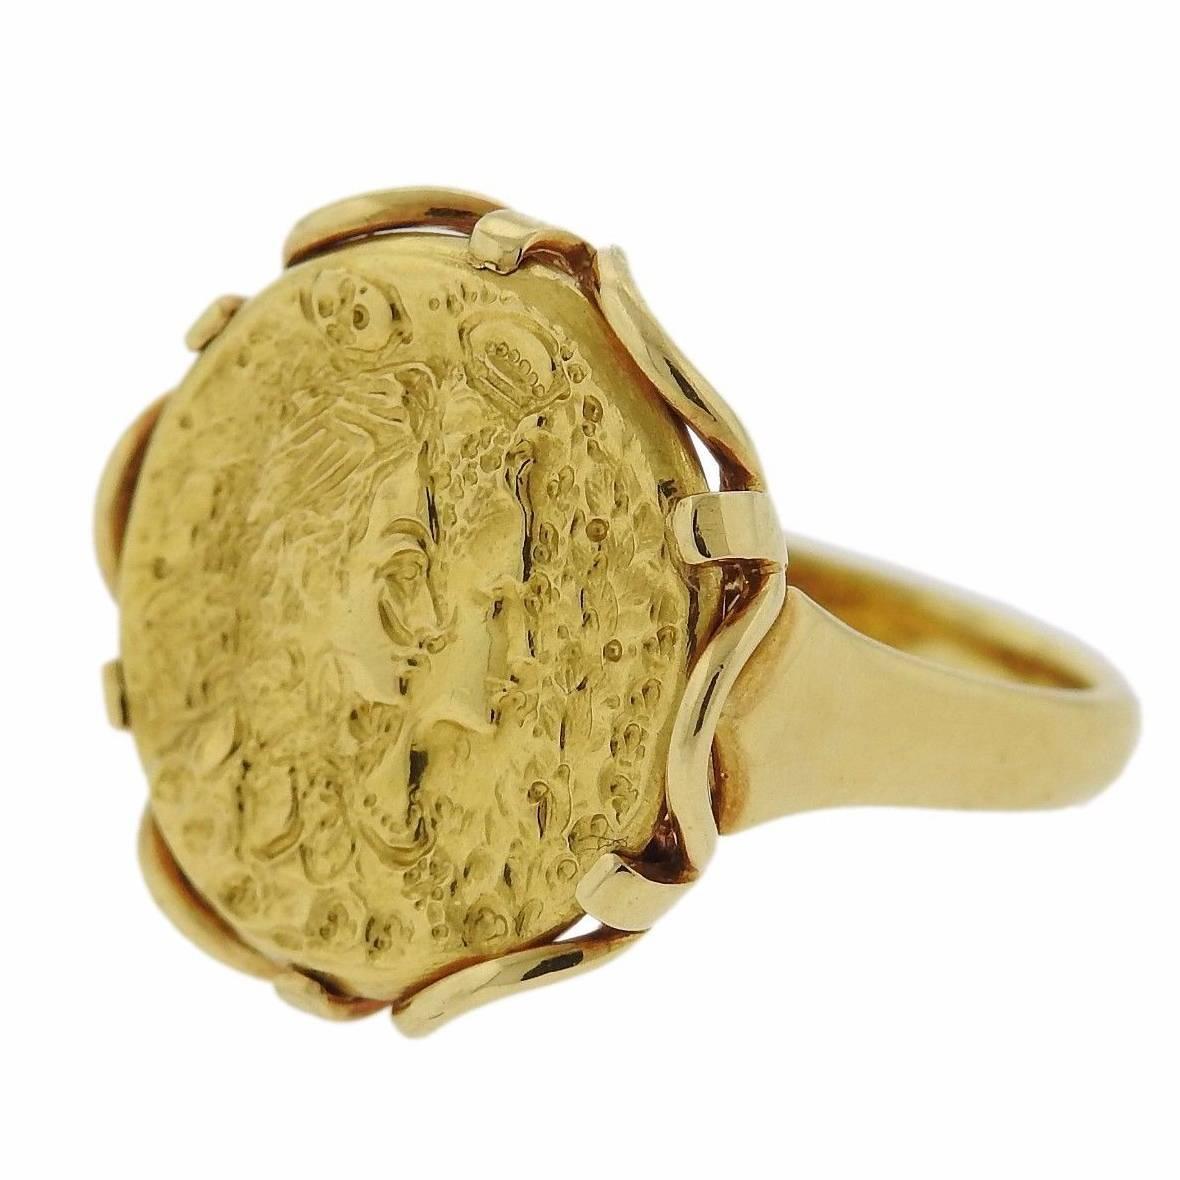 Rare Salvador Dali Gold Coin Medal Ring